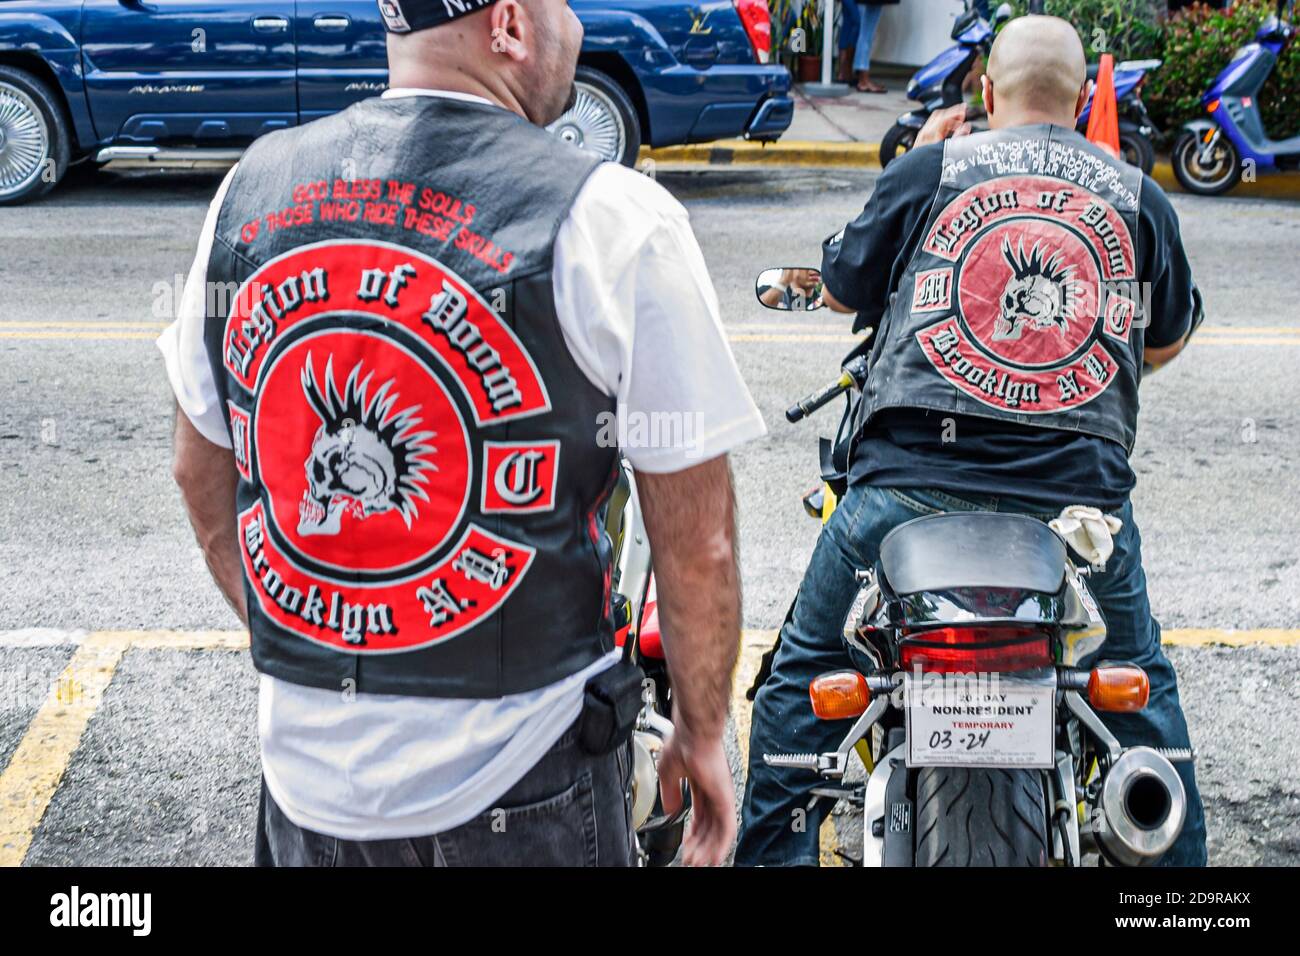 Miami Beach Florida, Ocean Drive, Legion of Doom grupo de motocicletas Brooklyn Nueva York, miembro lleva chaleco, Foto de stock